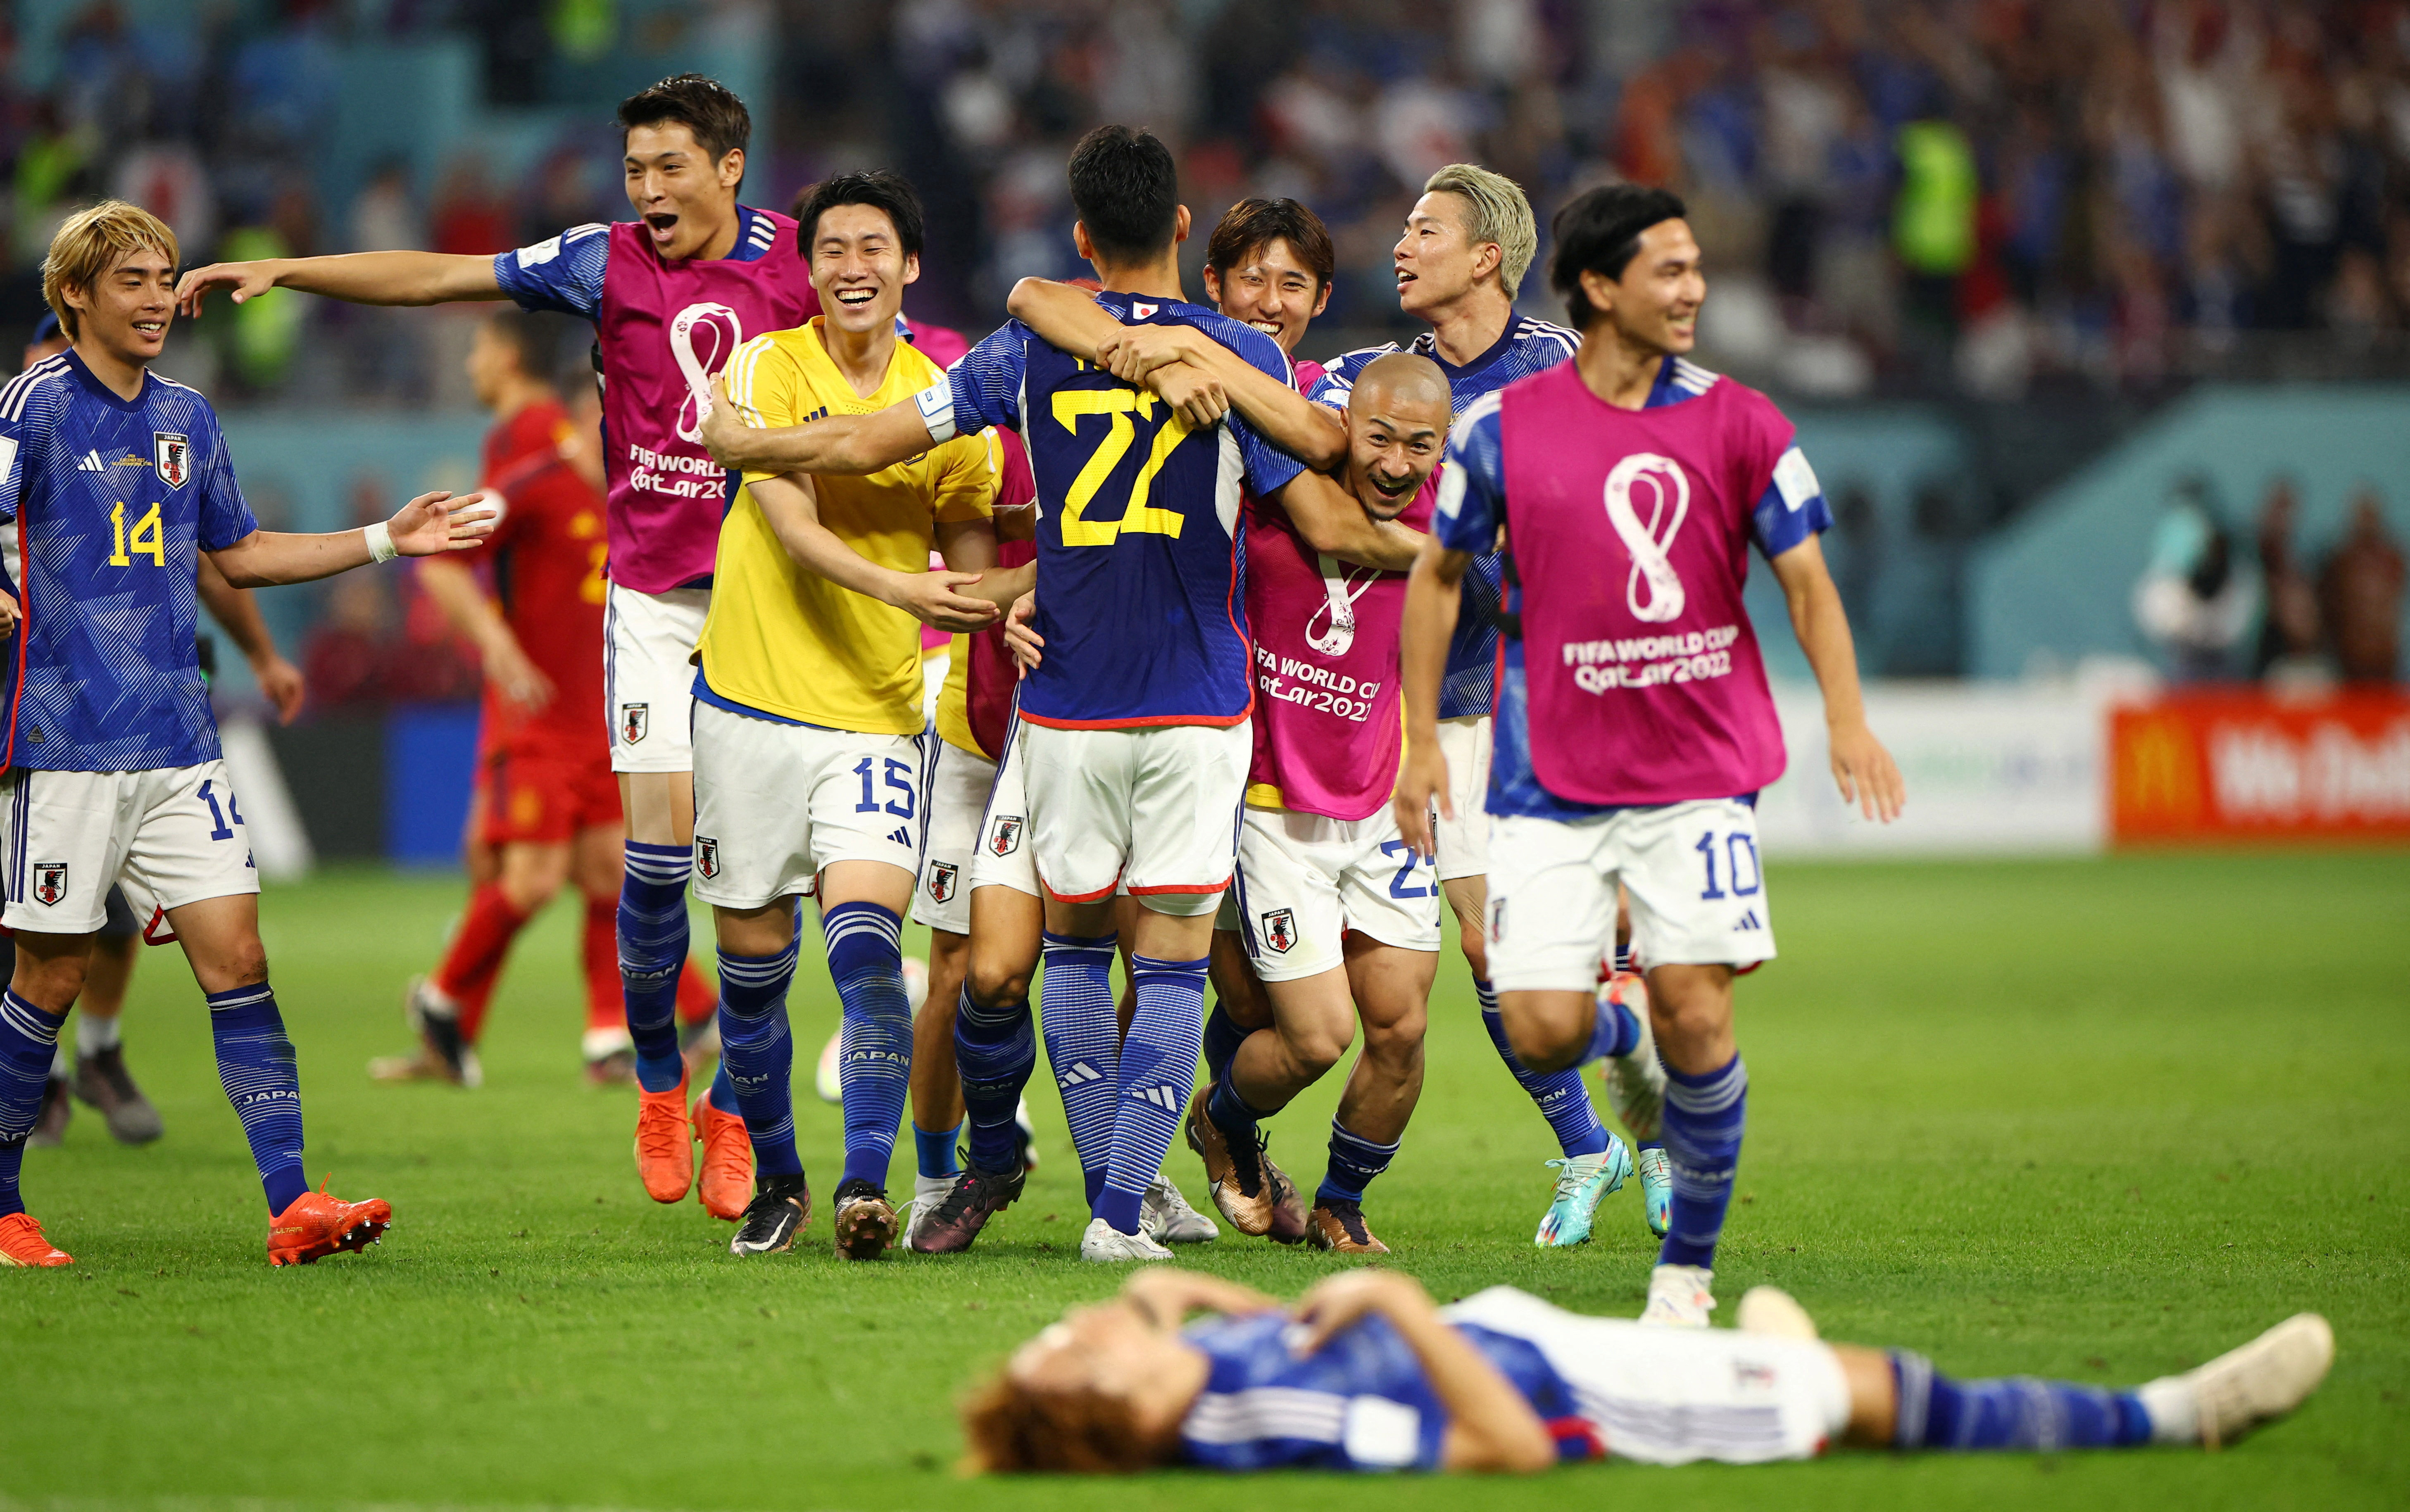 FIFA World Cup Qatar 2022 - Group E - Japan v Spain